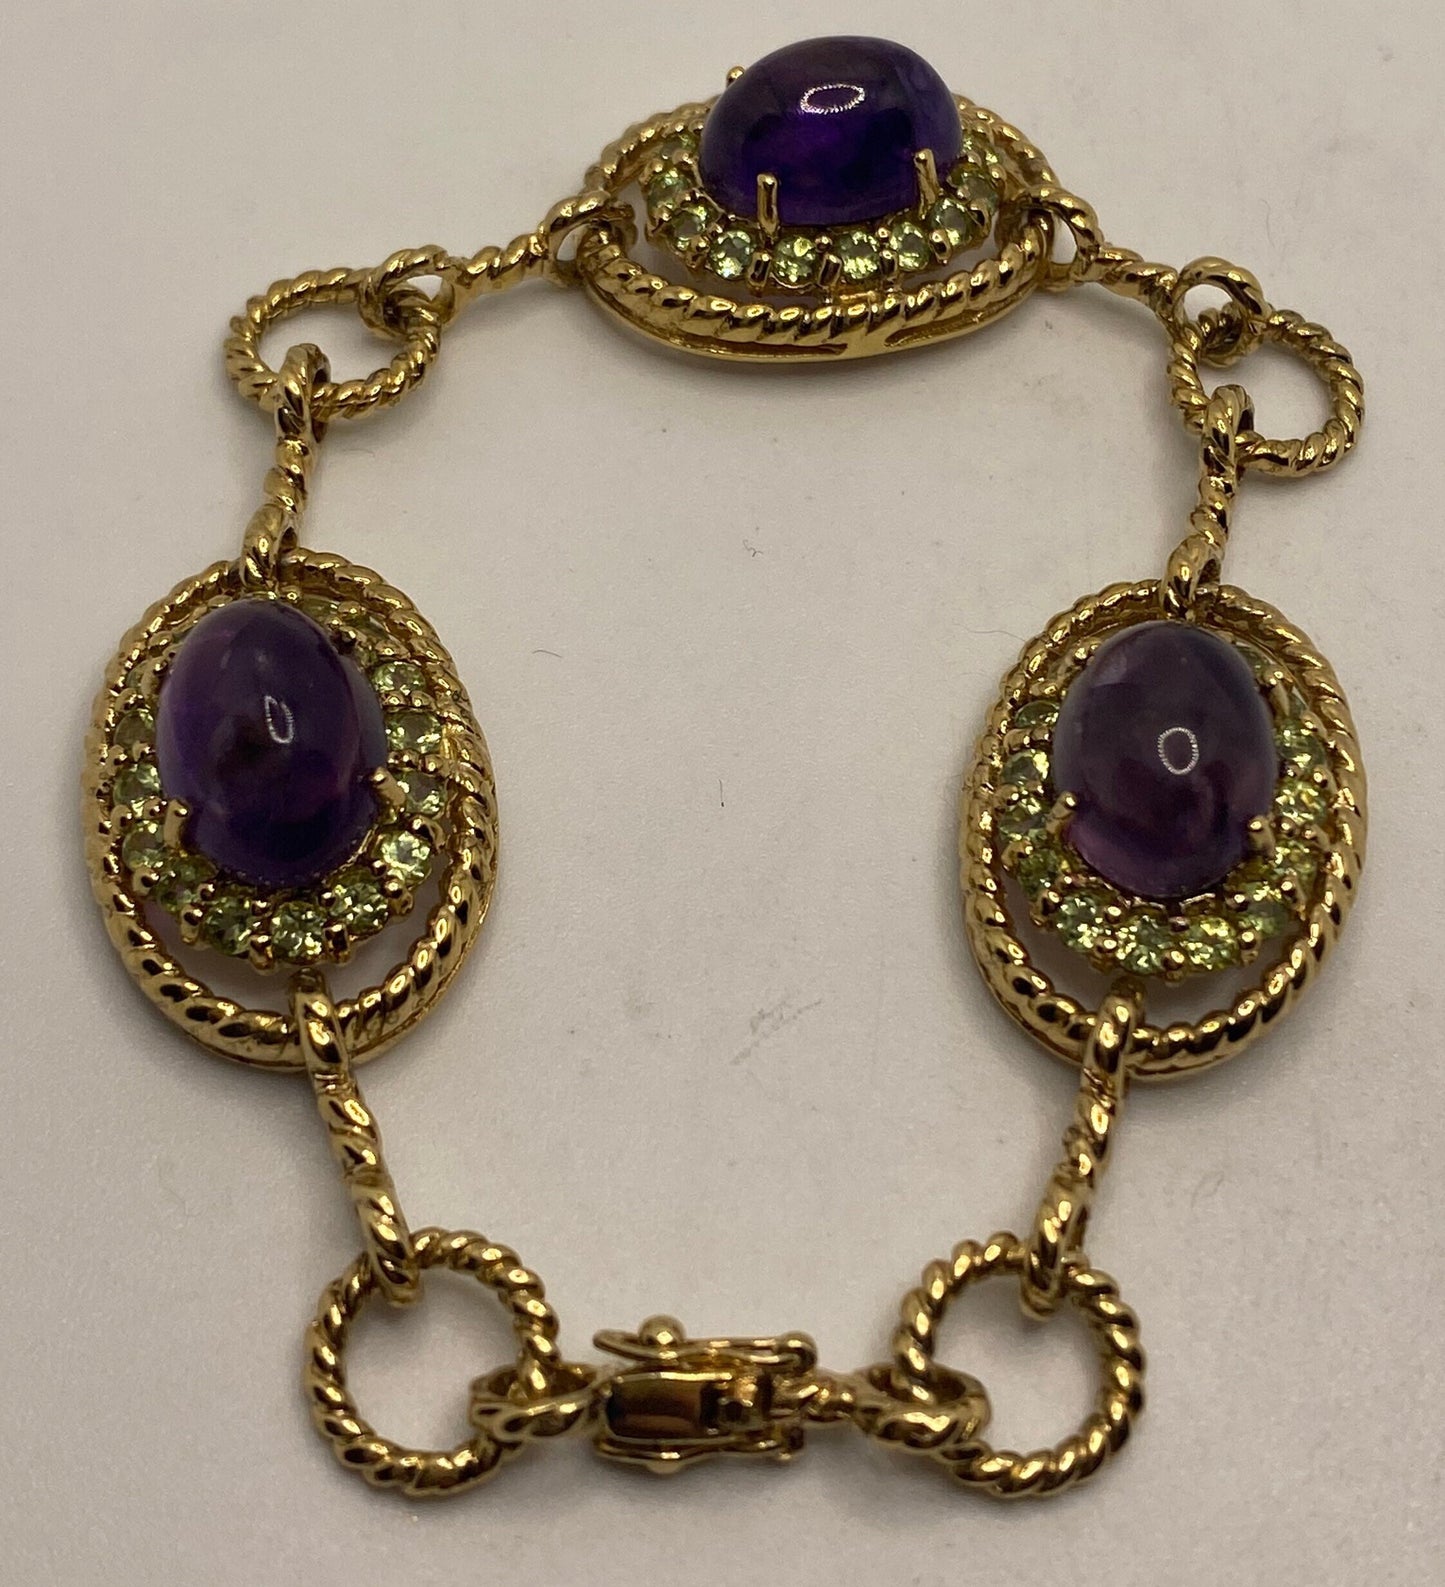 Vintage Purple Amethyst Citrine Bracelet Golden 925 Sterling Silver